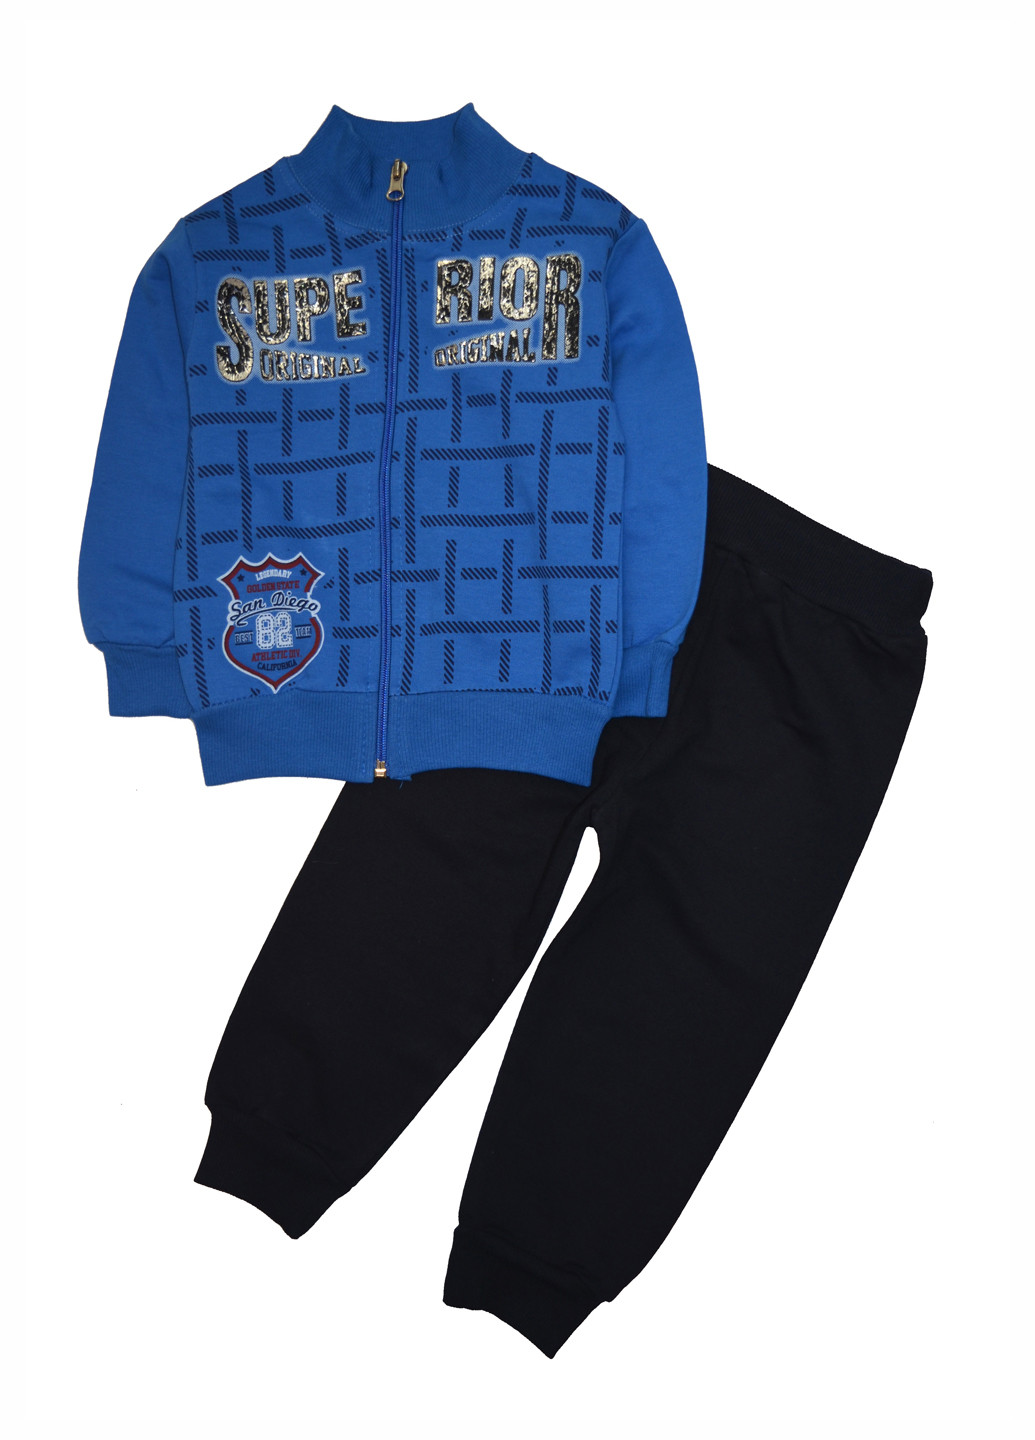 Синий демисезонный костюм (кофта, брюки) с длинным рукавом, брючный ADK Kids Club